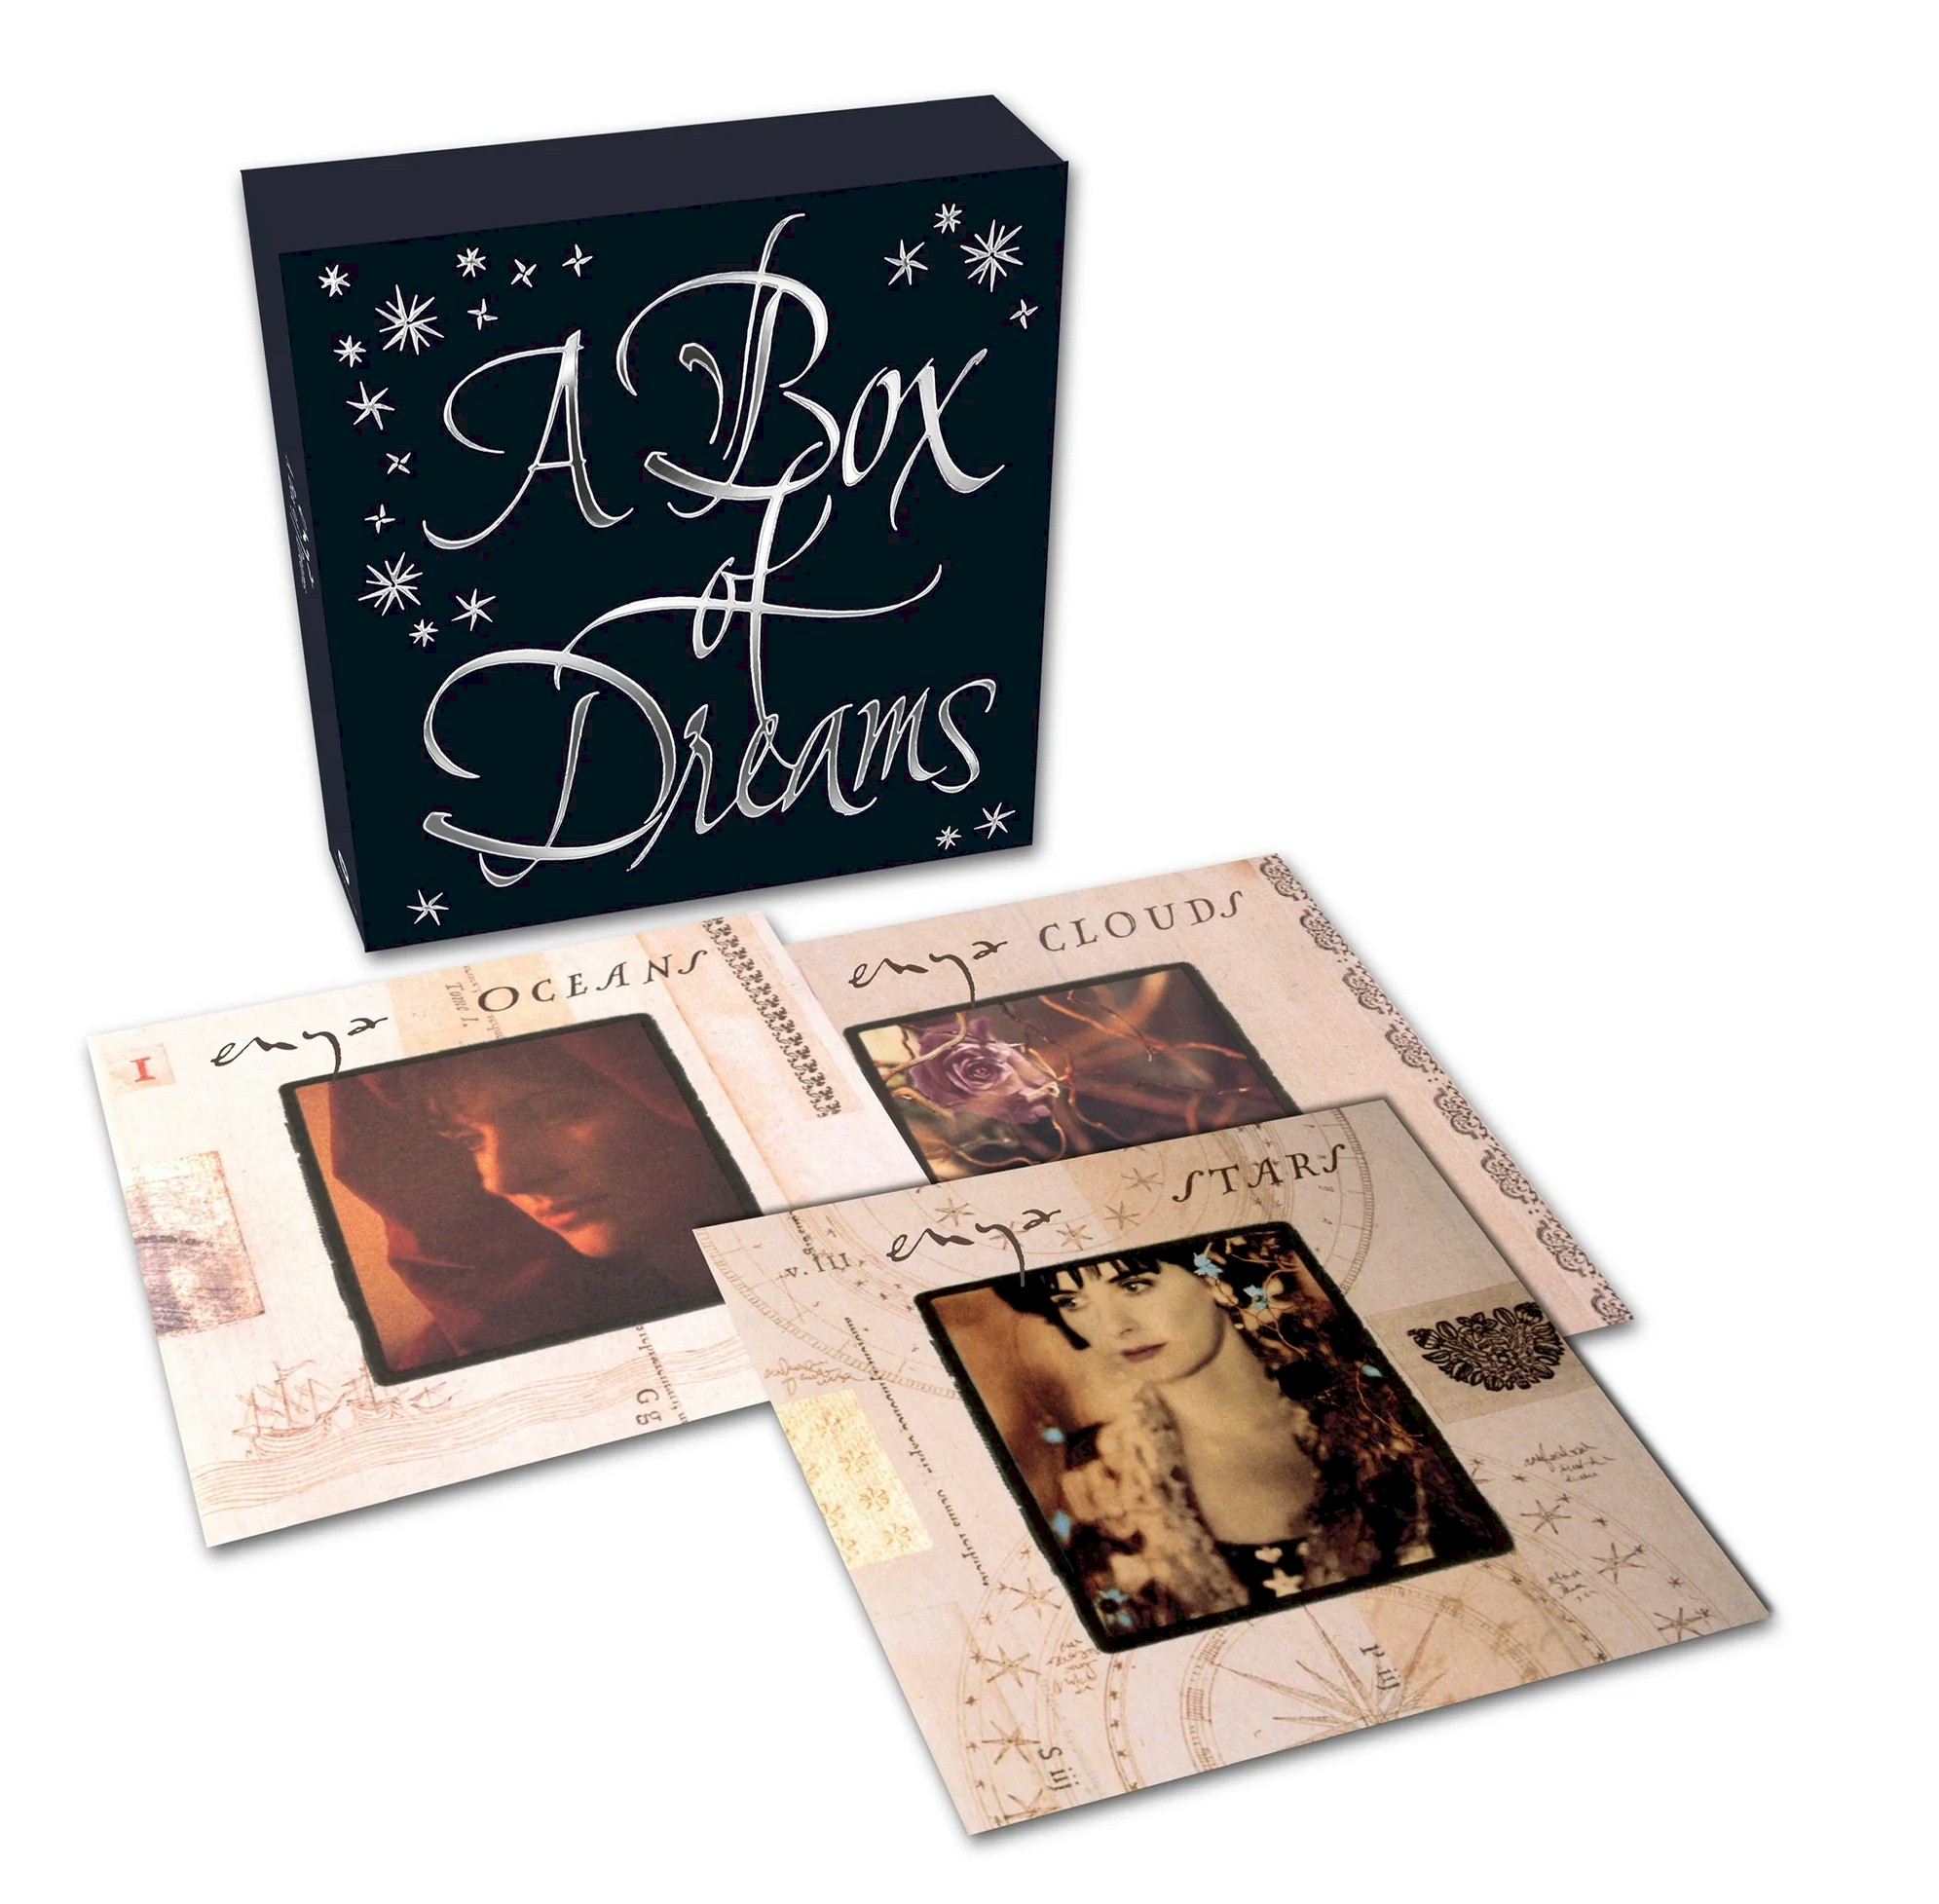 Enya lança 'A Box of Dreams', em edição limitada com seis LP's reciclados